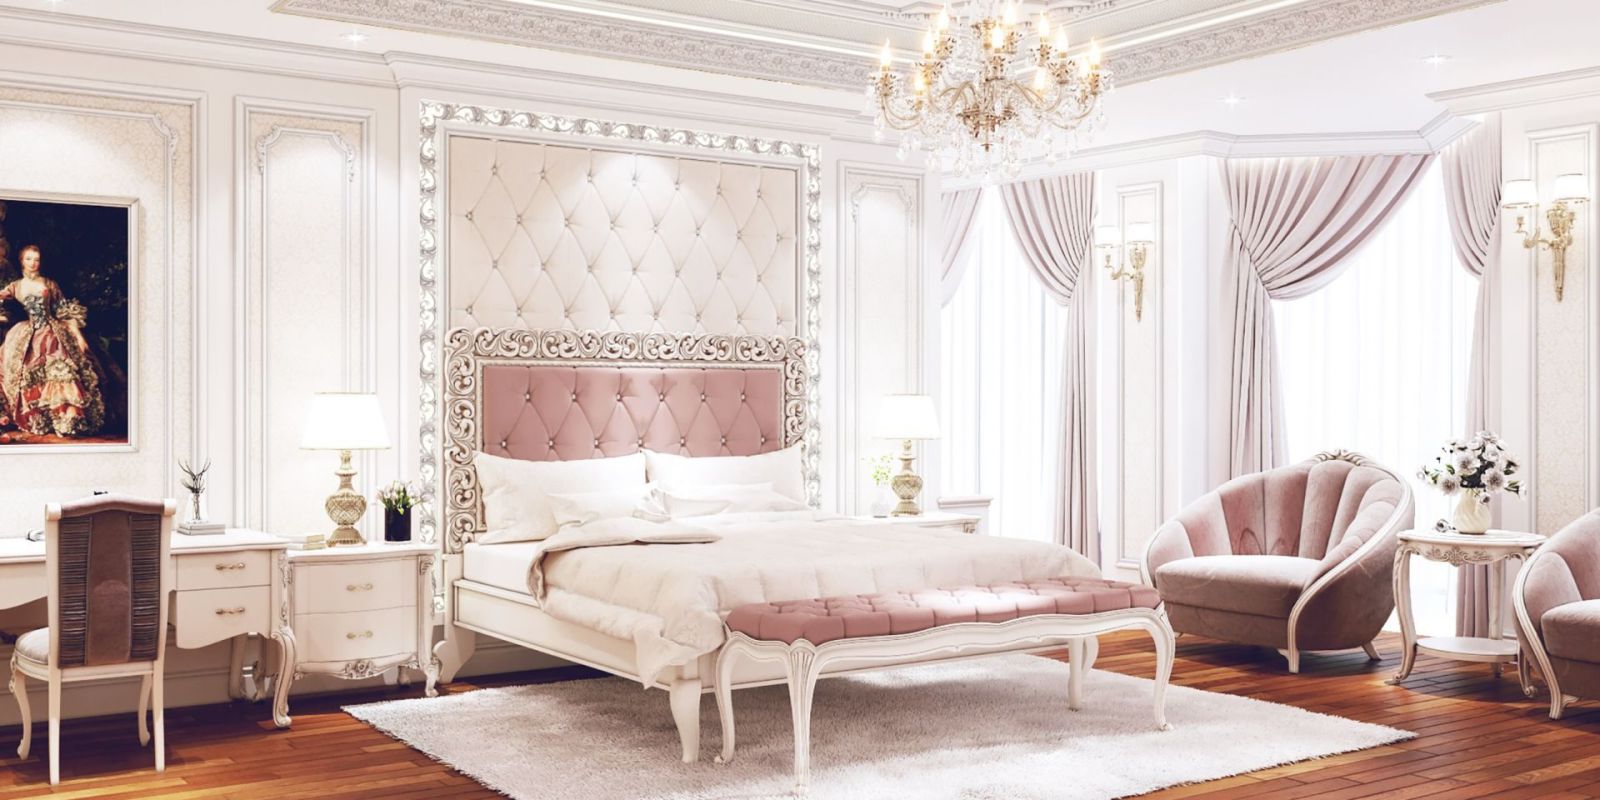 Ý tưởng phòng ngủ màu hồng thiết kế theo phong cách tân cổ điển